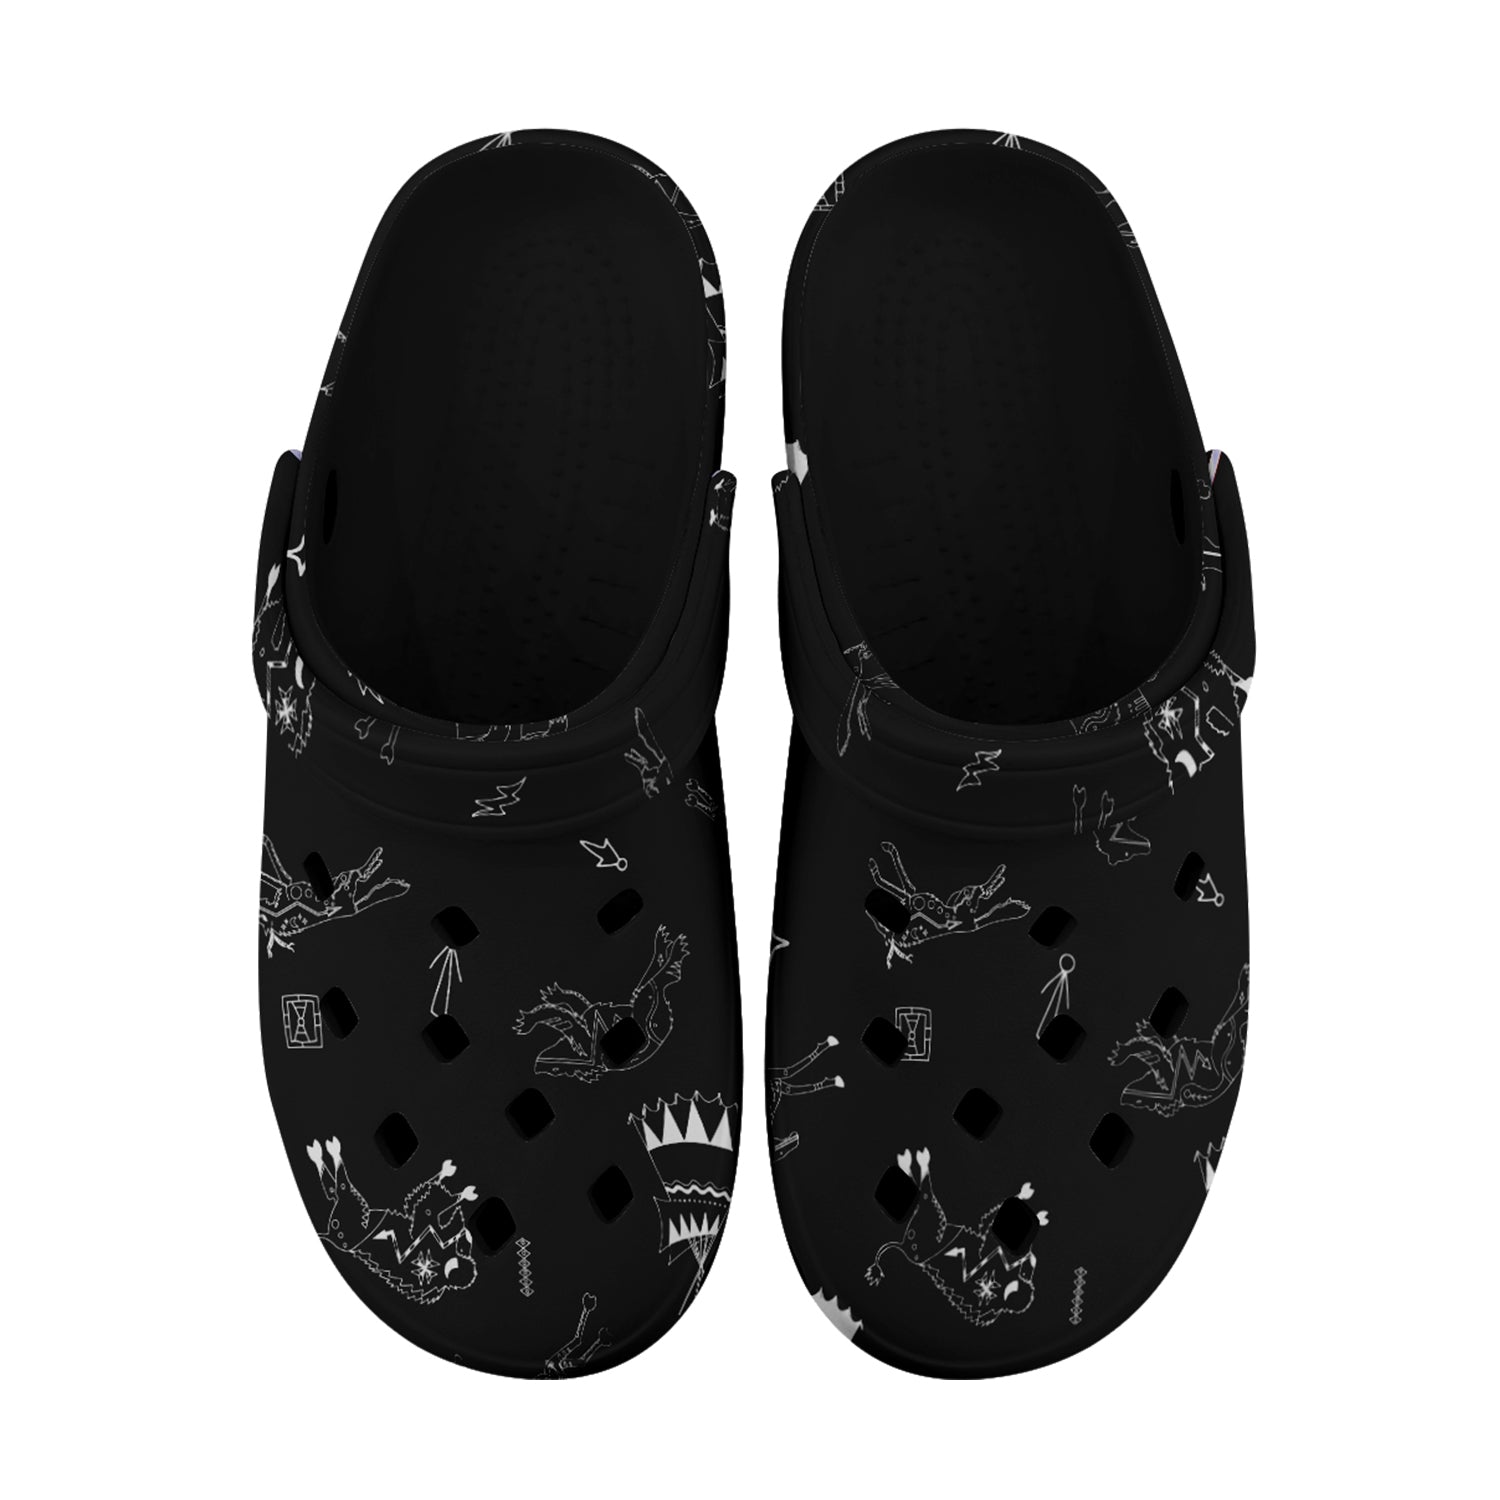 Ledger Dabbles Black Muddies Unisex Clog Shoes